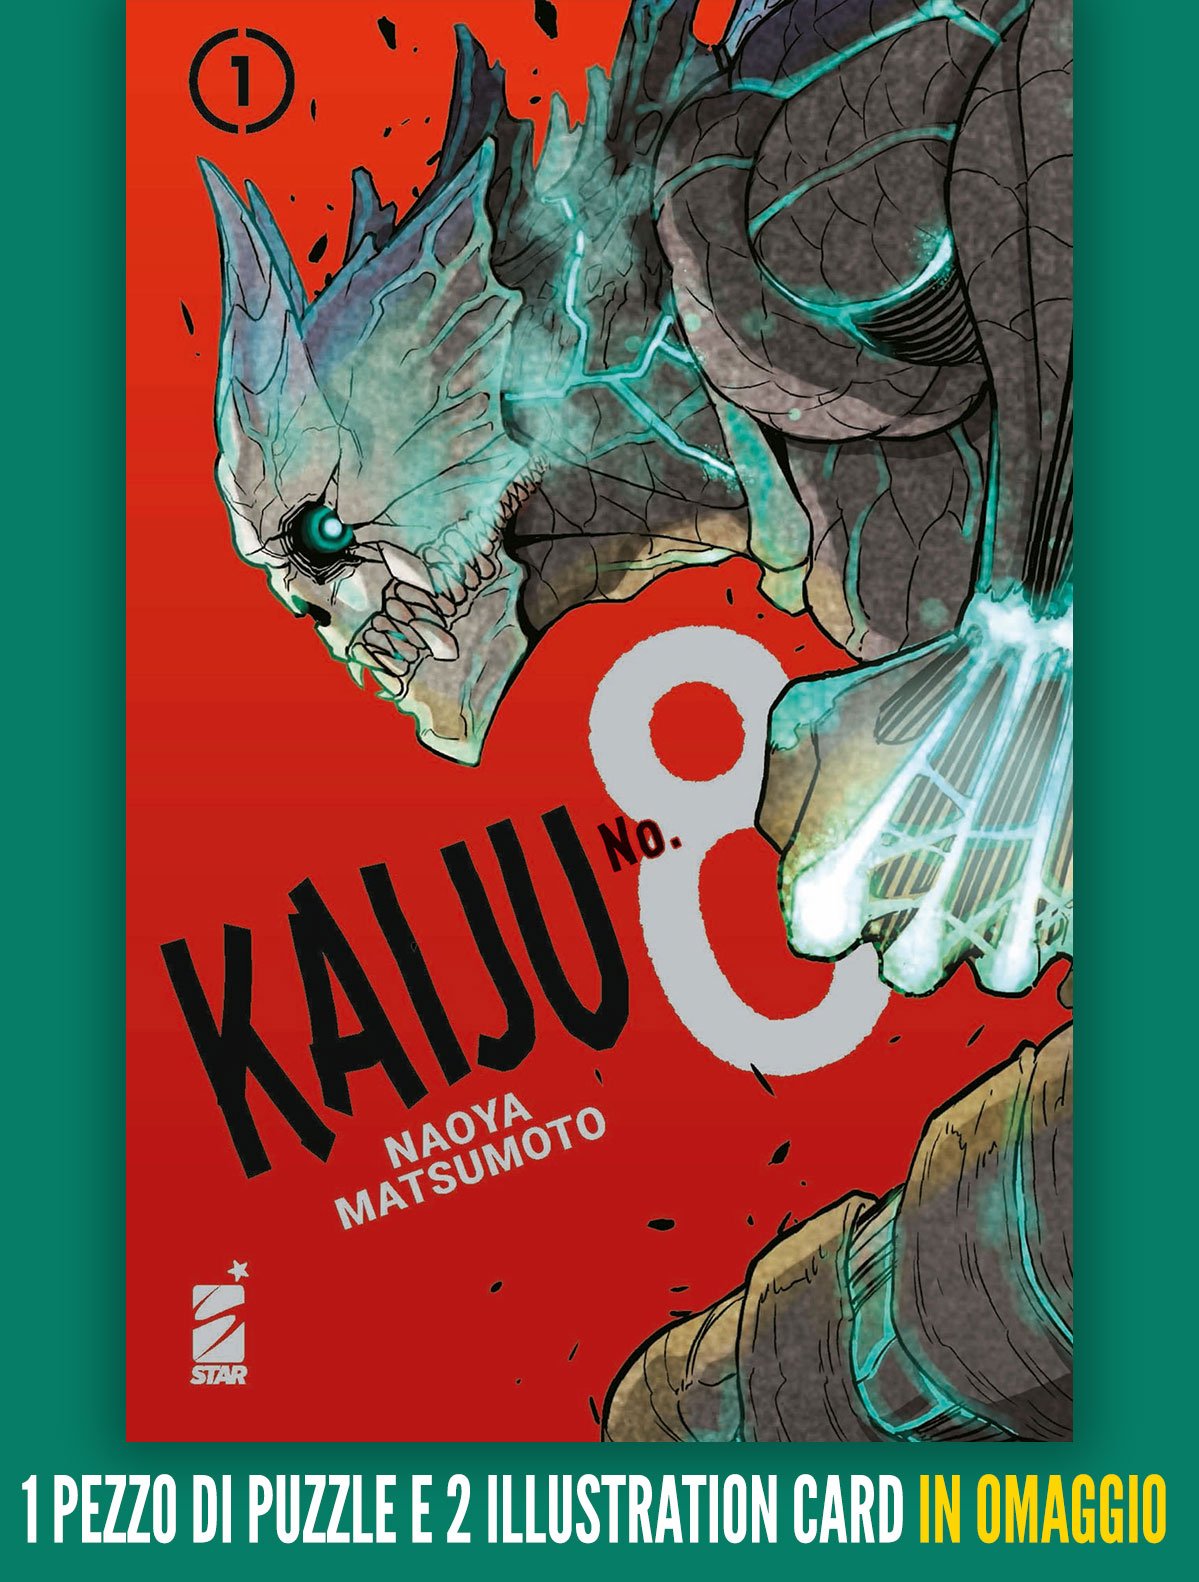 KAIJU No. 8 1 con puzzle e illustration card, tra le uscite Star Comics del 23 Marzo 2022